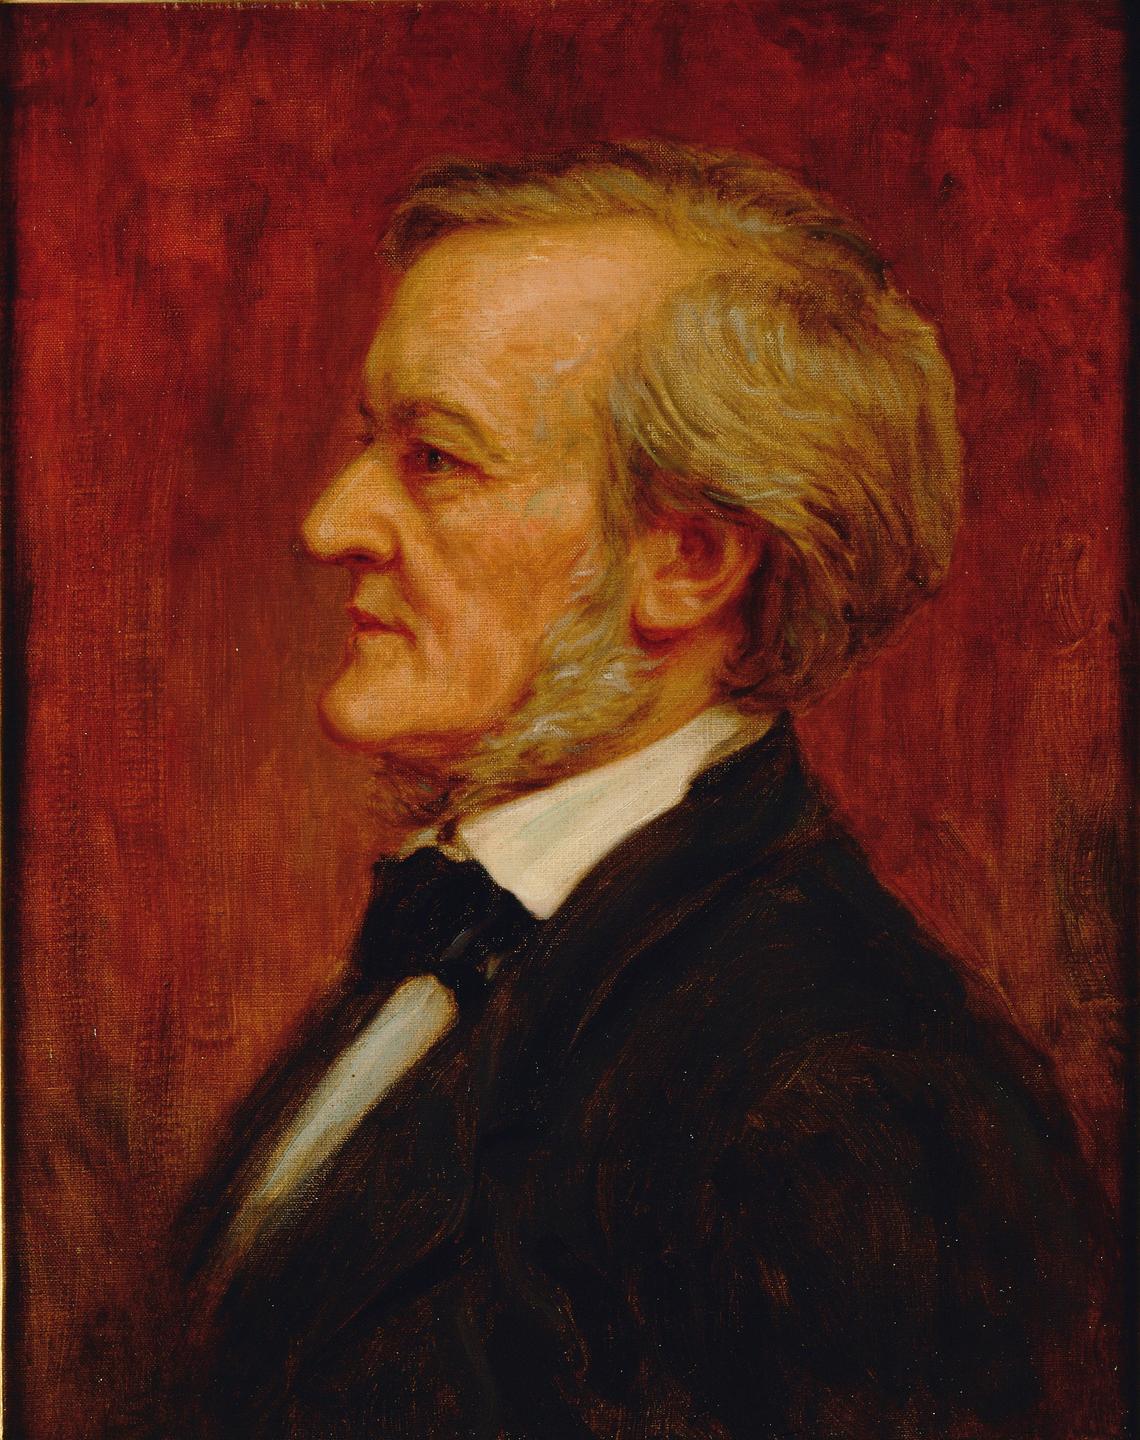 Gemälde von Richard Wagner (1813-1883) von circa 1875